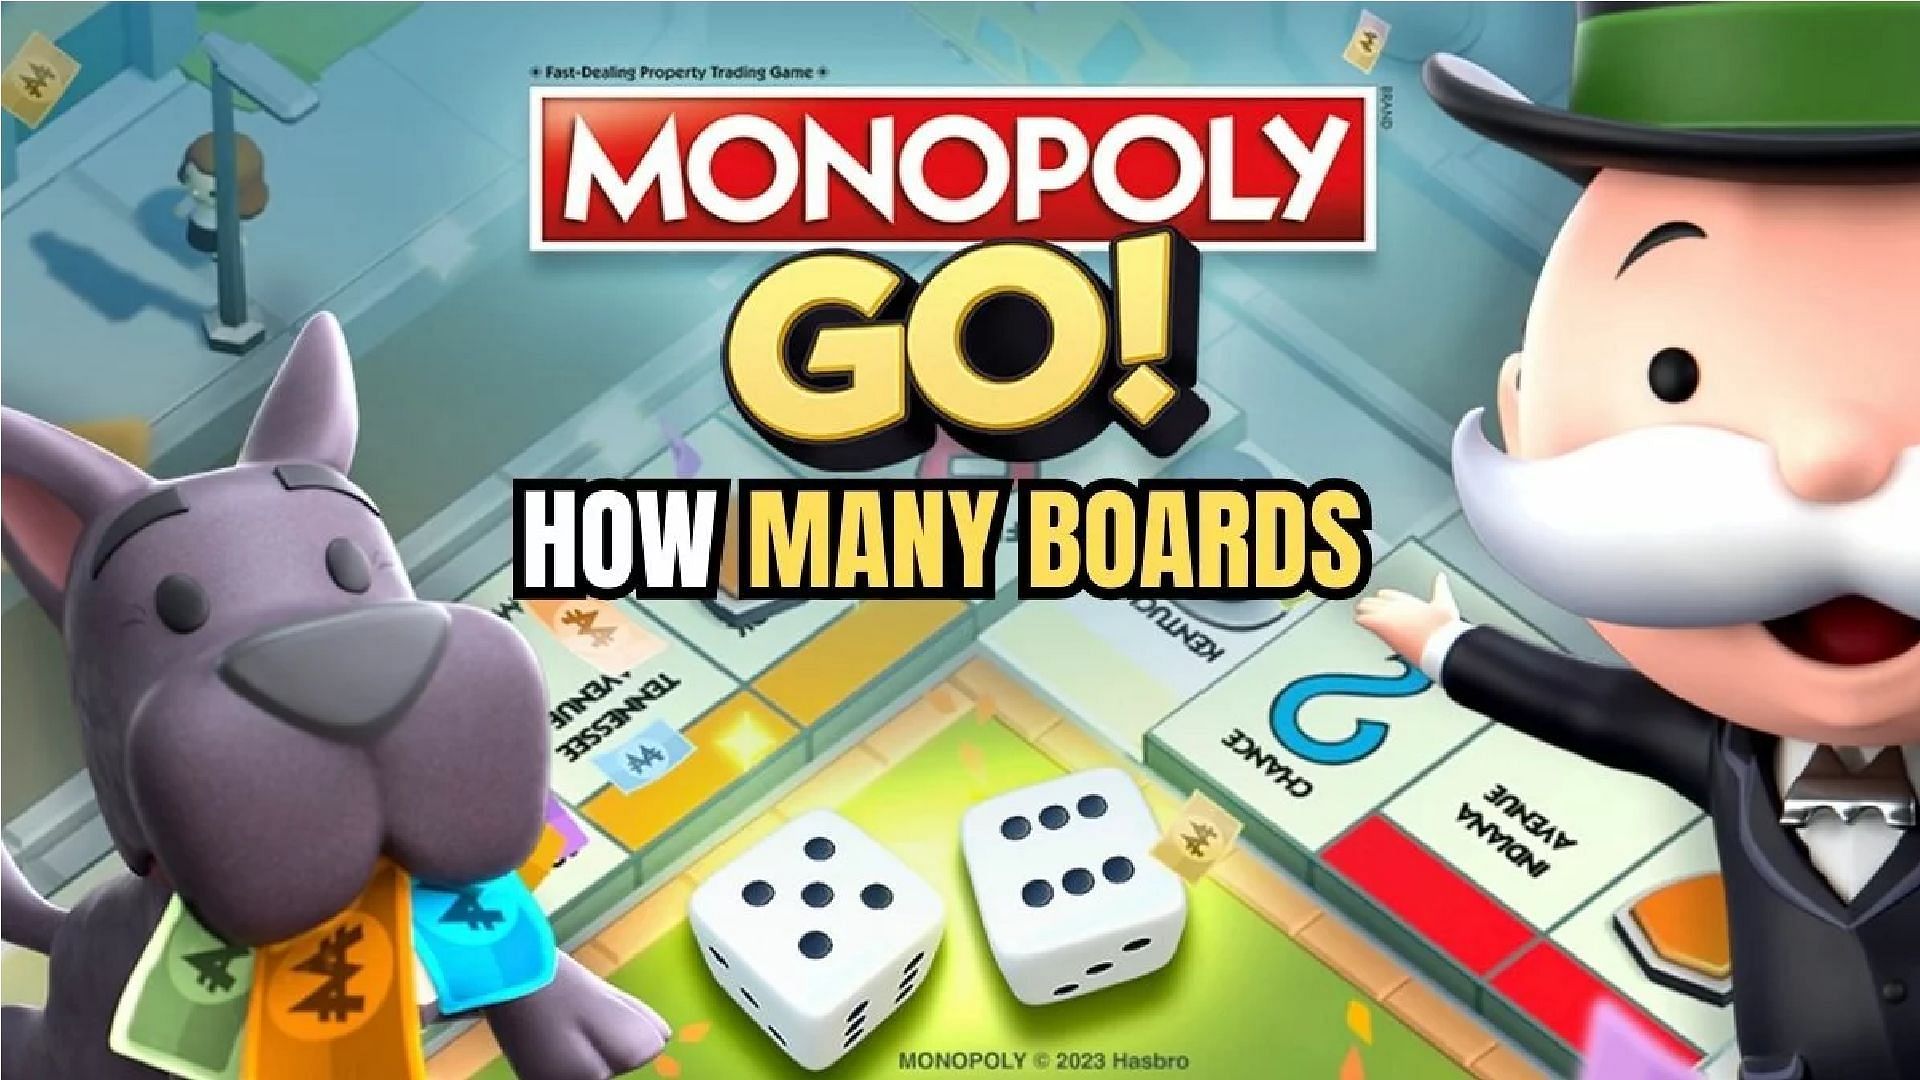 Monopoly Fantasy Board Games